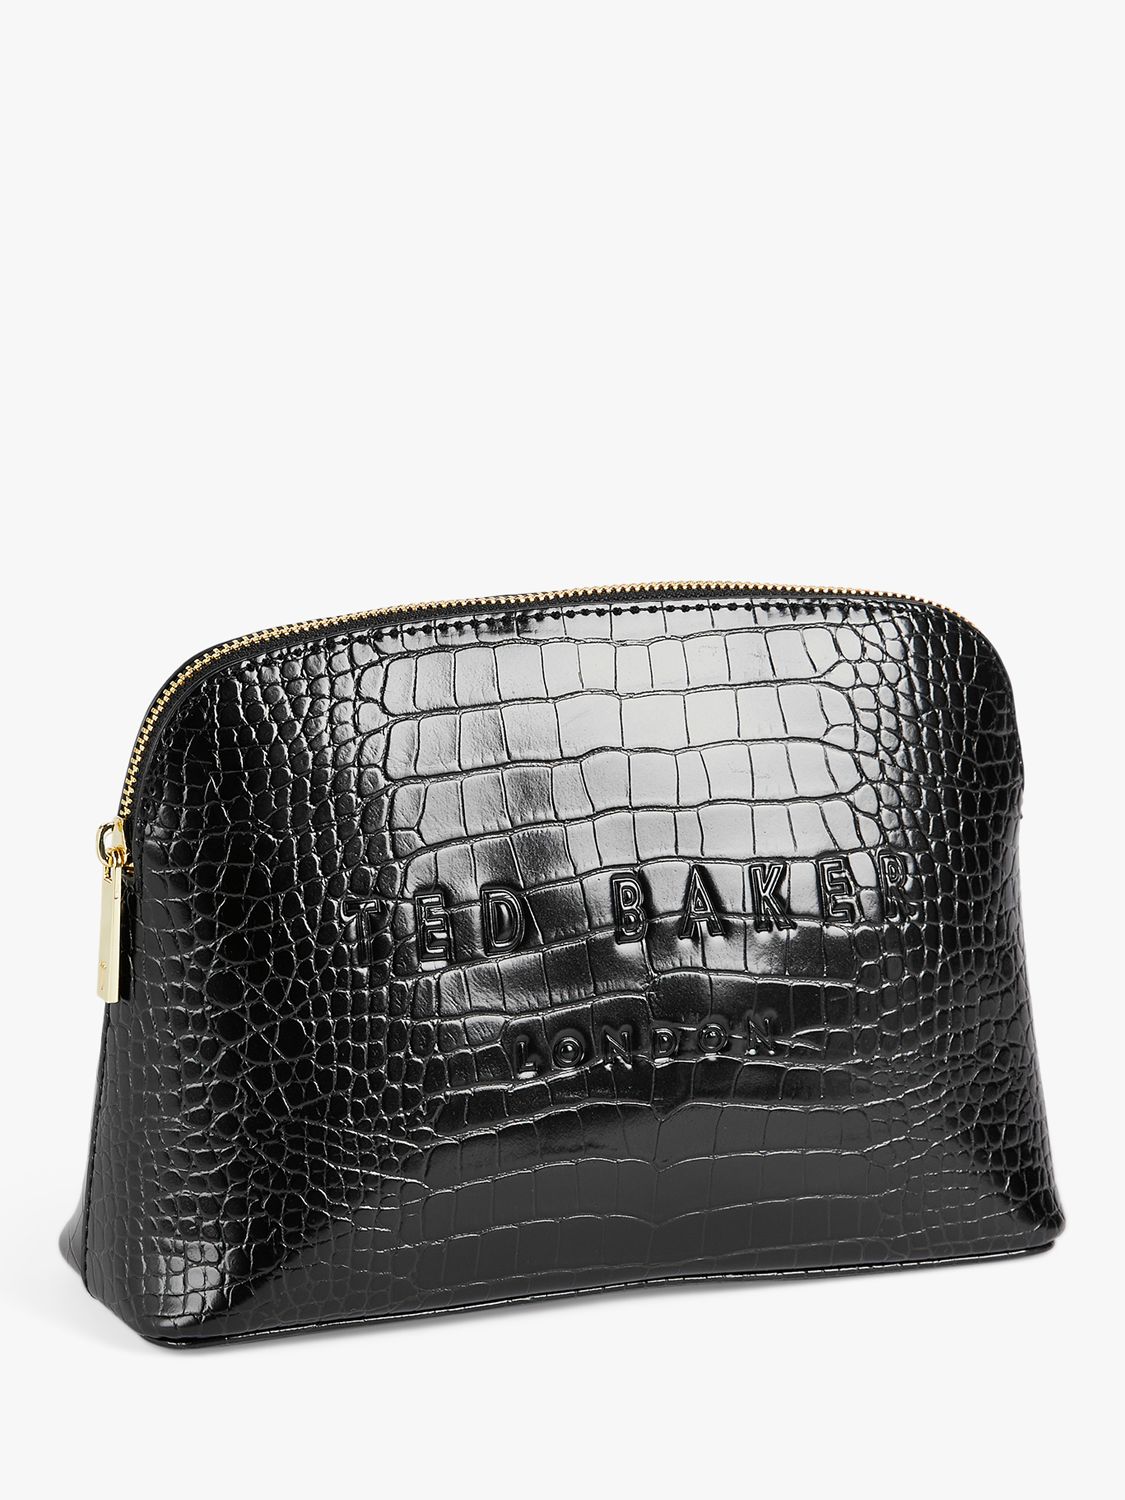 Ted Baker Crocala Croc Effect Makeup Bag, Black, One Size 3